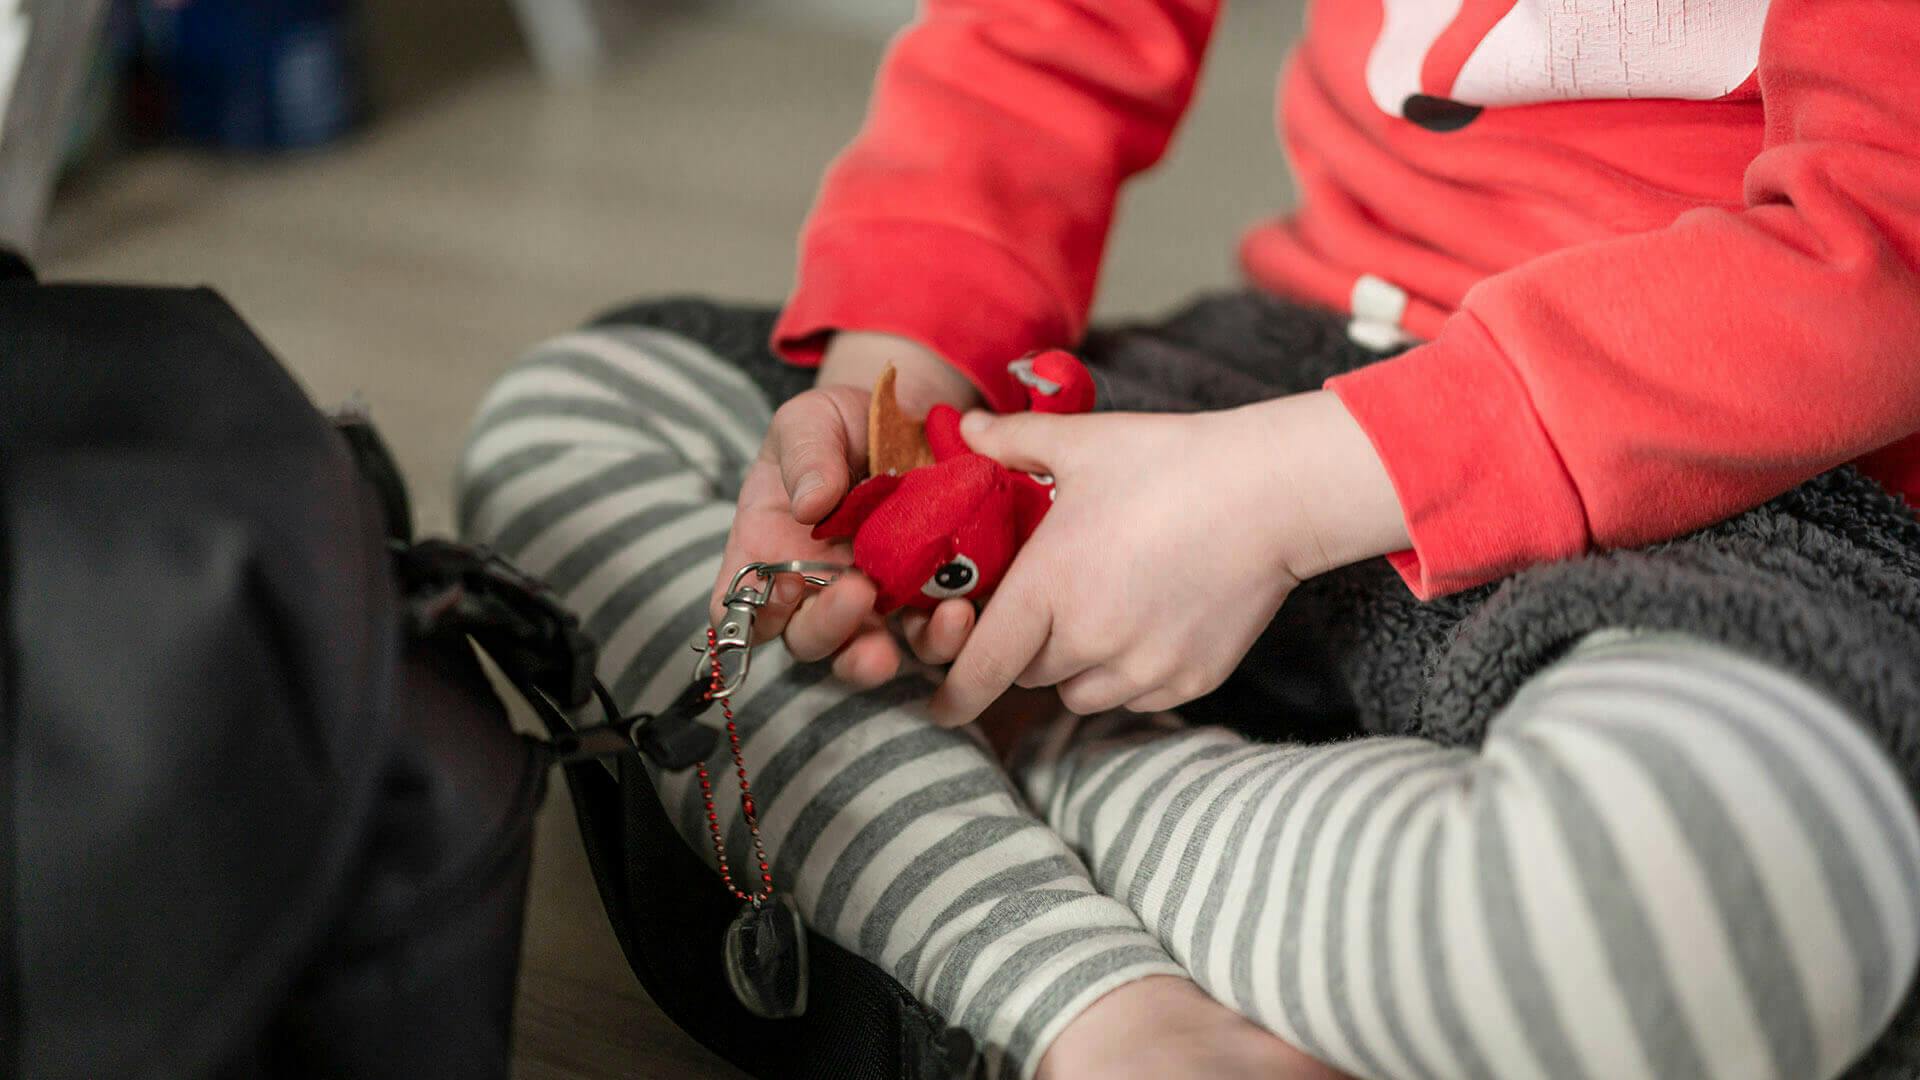 보영씨의 아이. 바닥에 앉아 장난감을 손에 쥐고 있다. 빨간색 셔츠, 얼룩무늬 바지를 착용했다.